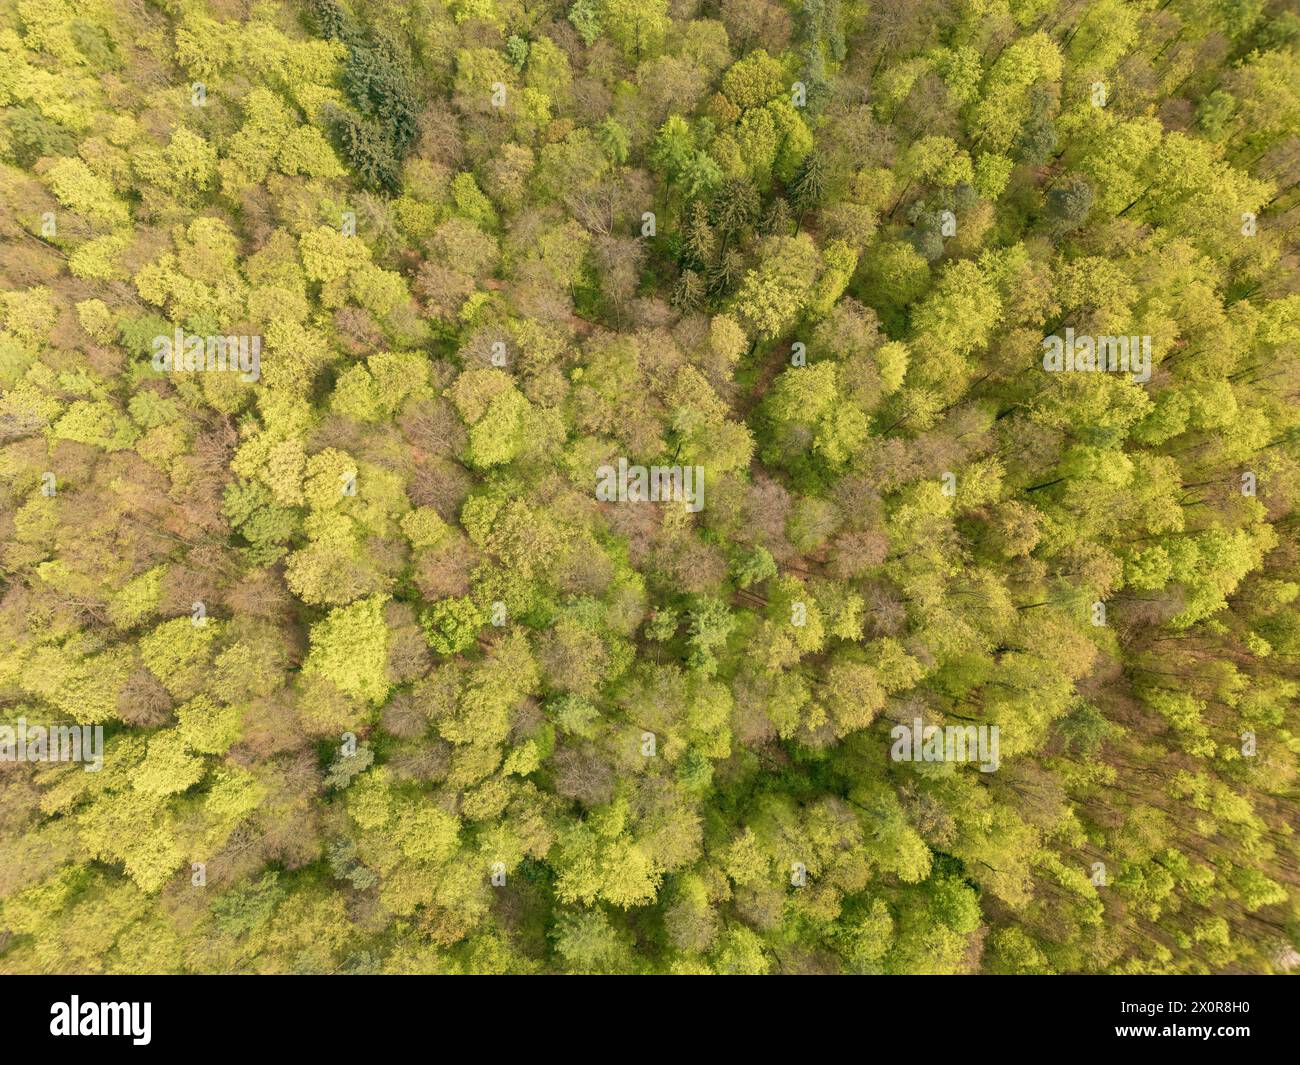 Une vue aérienne d'une forêt dense avec une variété de plantes terrestres, y compris des arbres à feuilles persistantes, des arbustes et du couvre-sol, créant une belle nature Banque D'Images